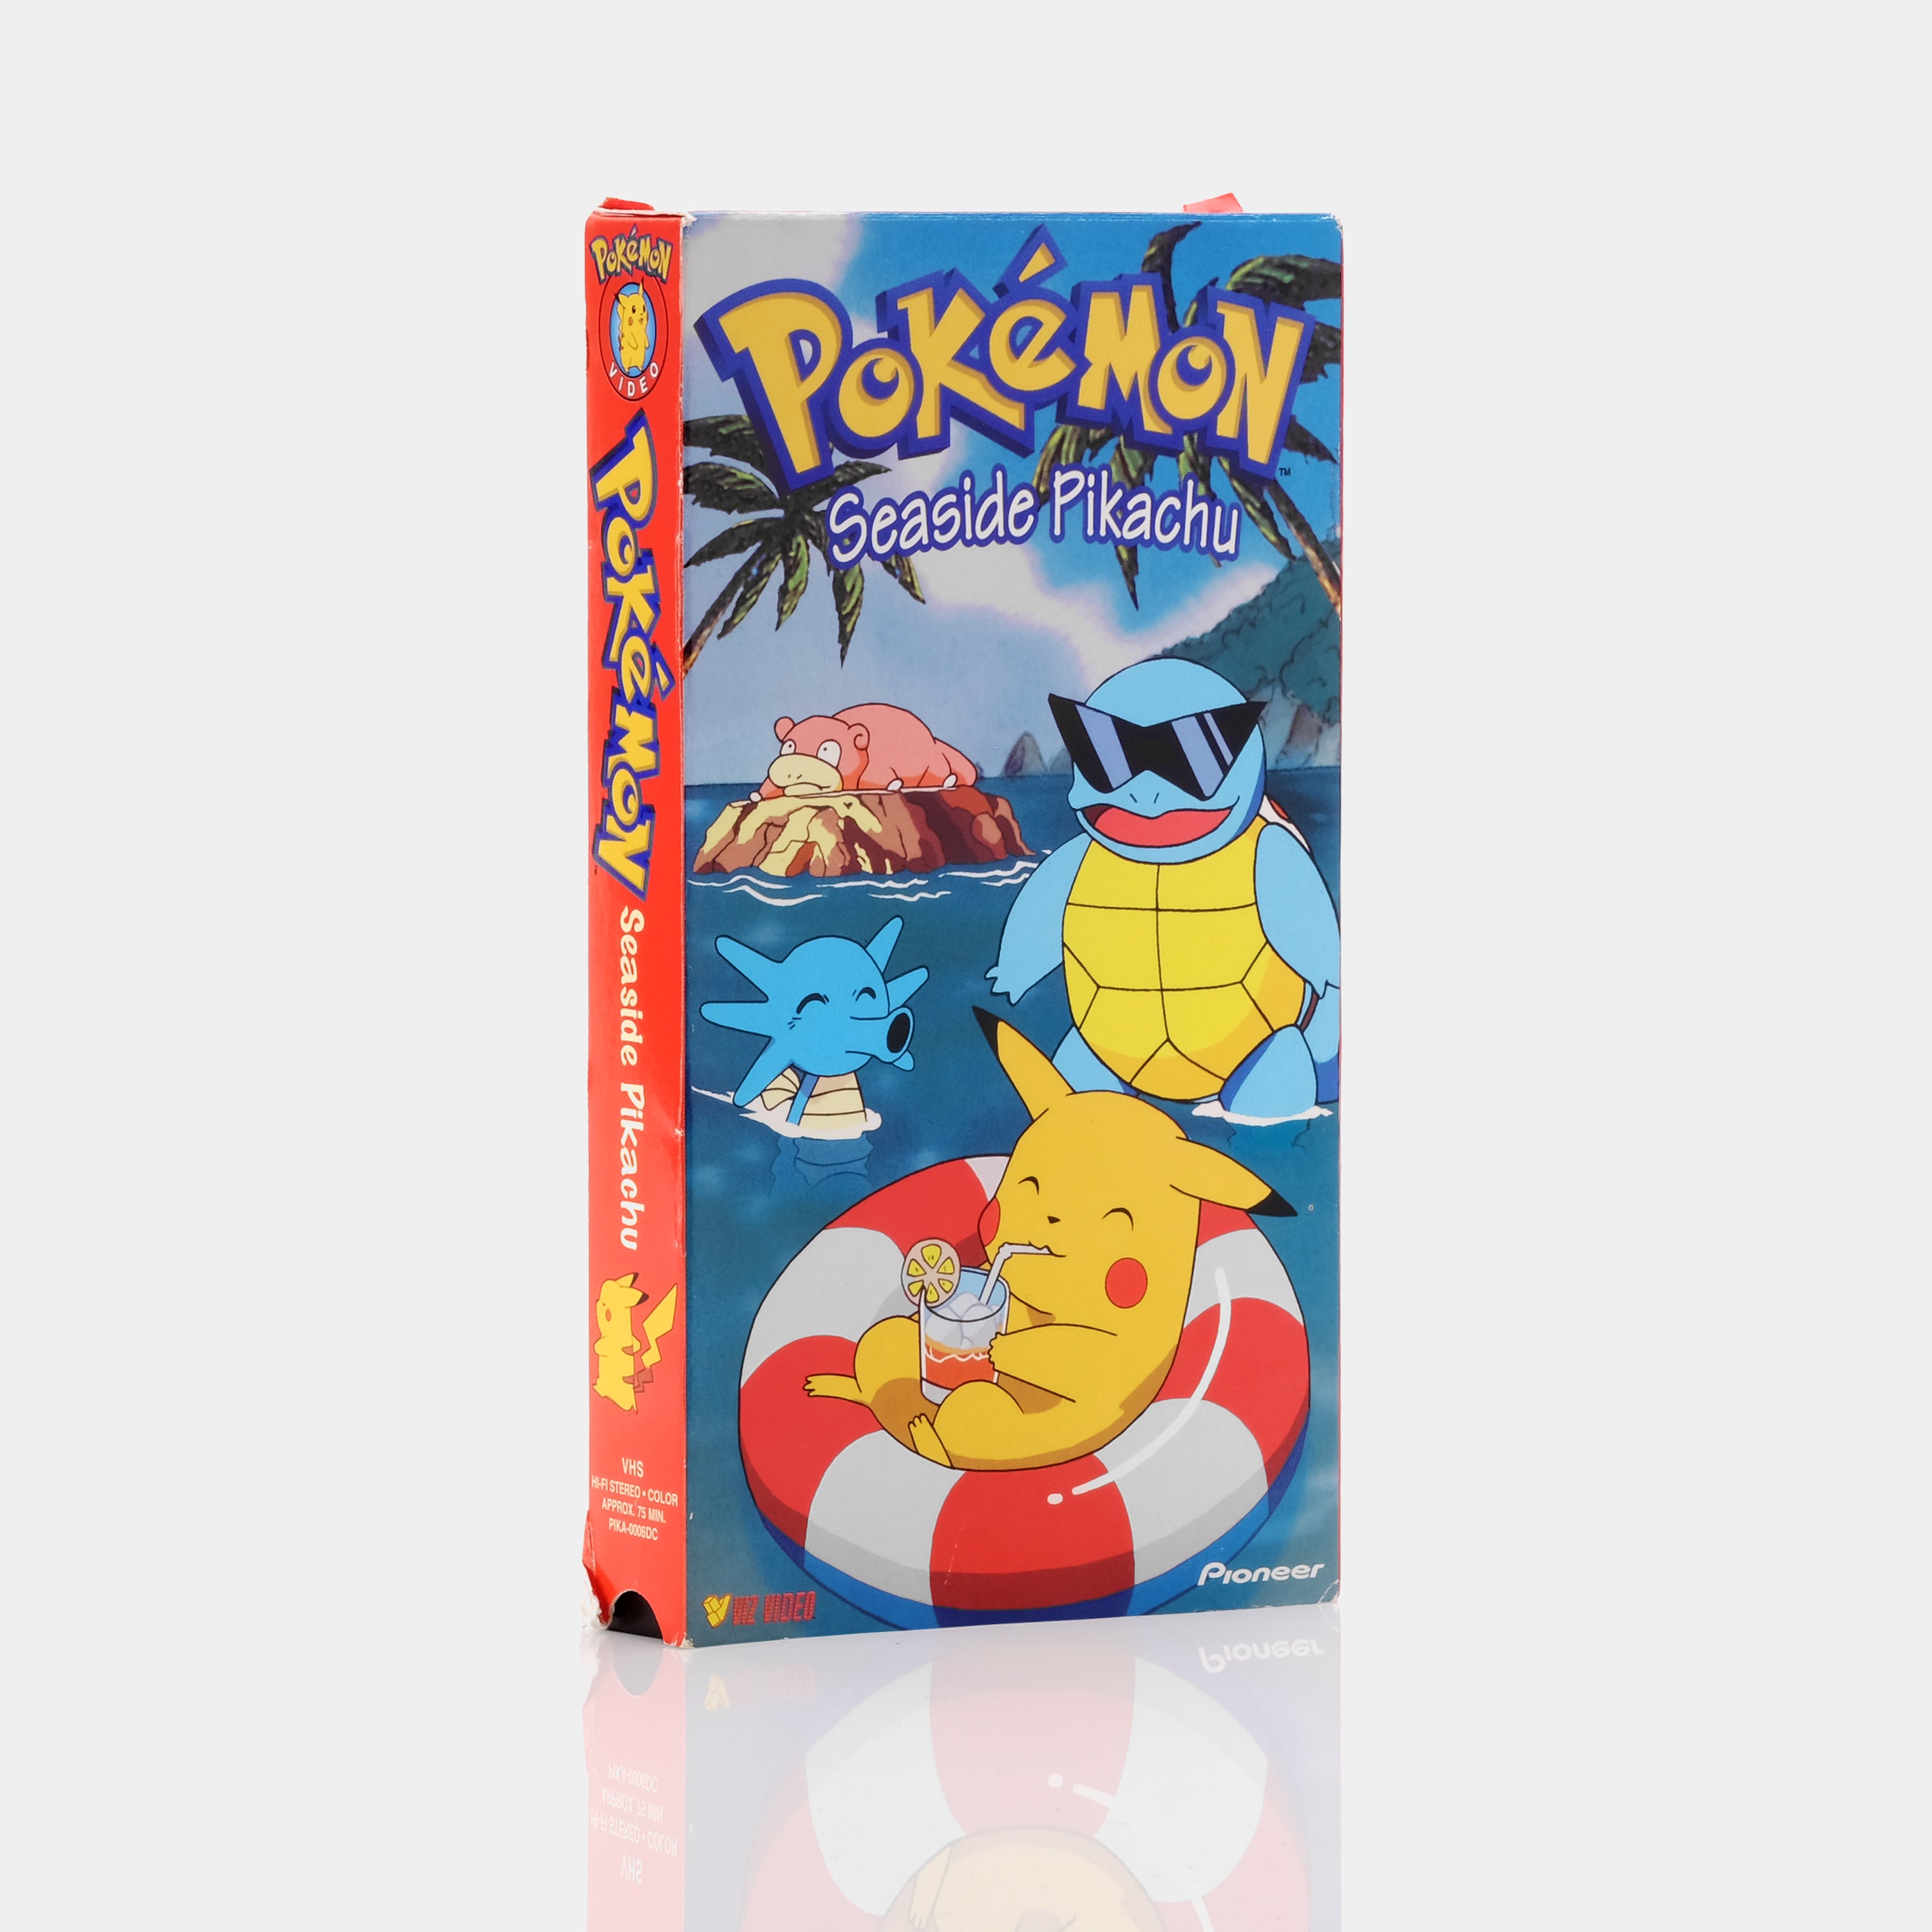 Pokémon: Seaside Pikachu VHS Tape